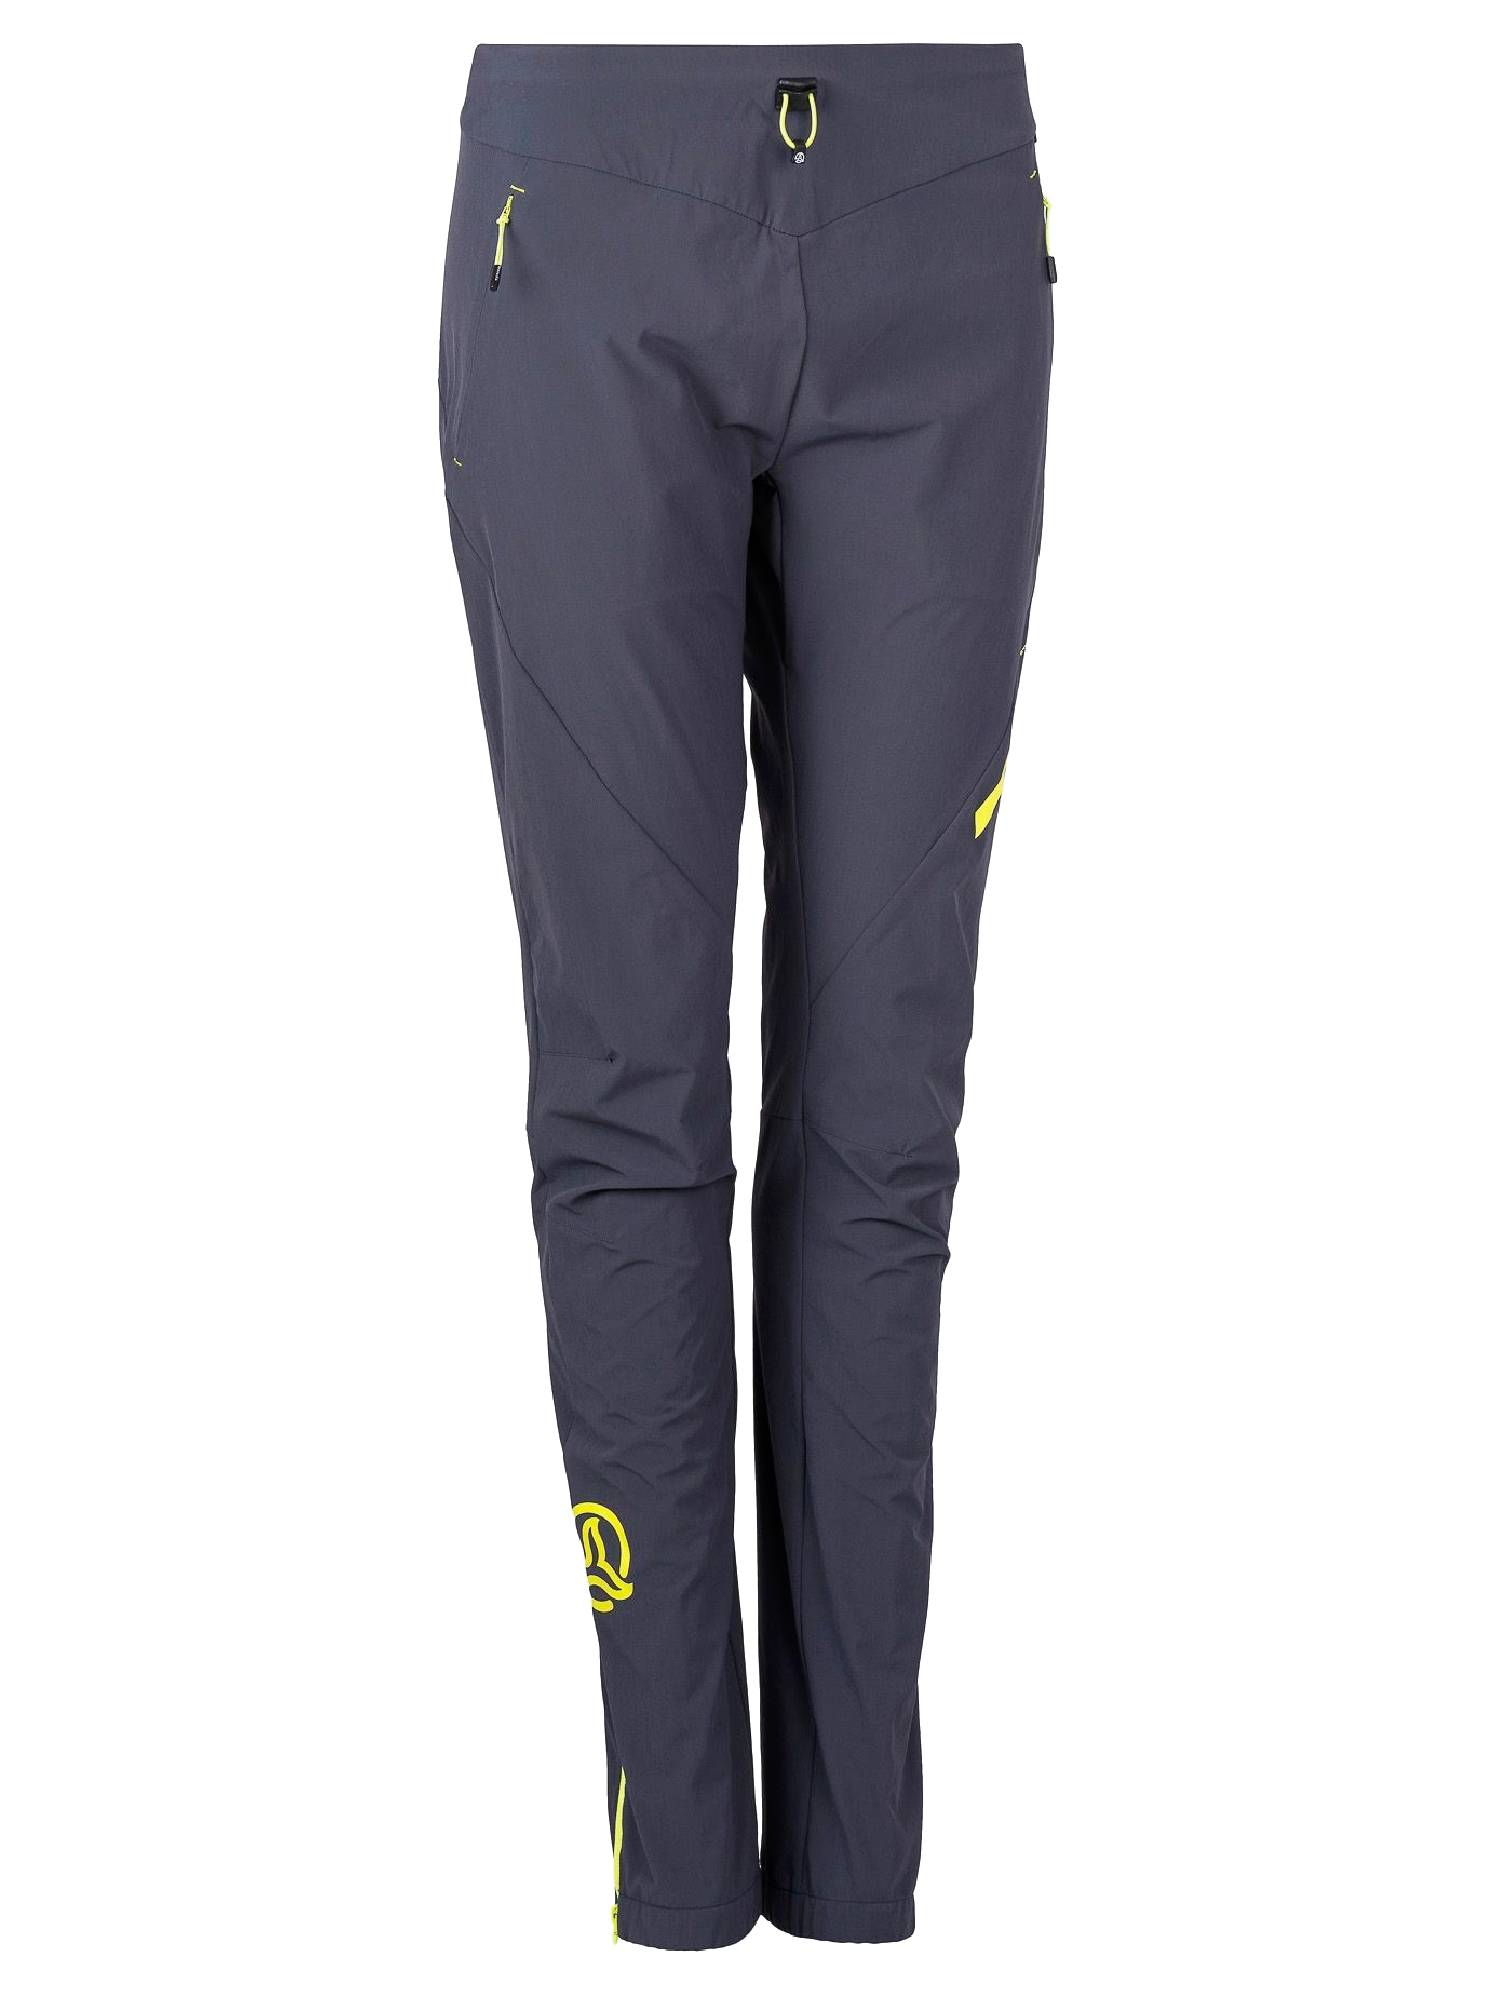 Спортивные брюки женские Ternua Outrun Pt W серые L